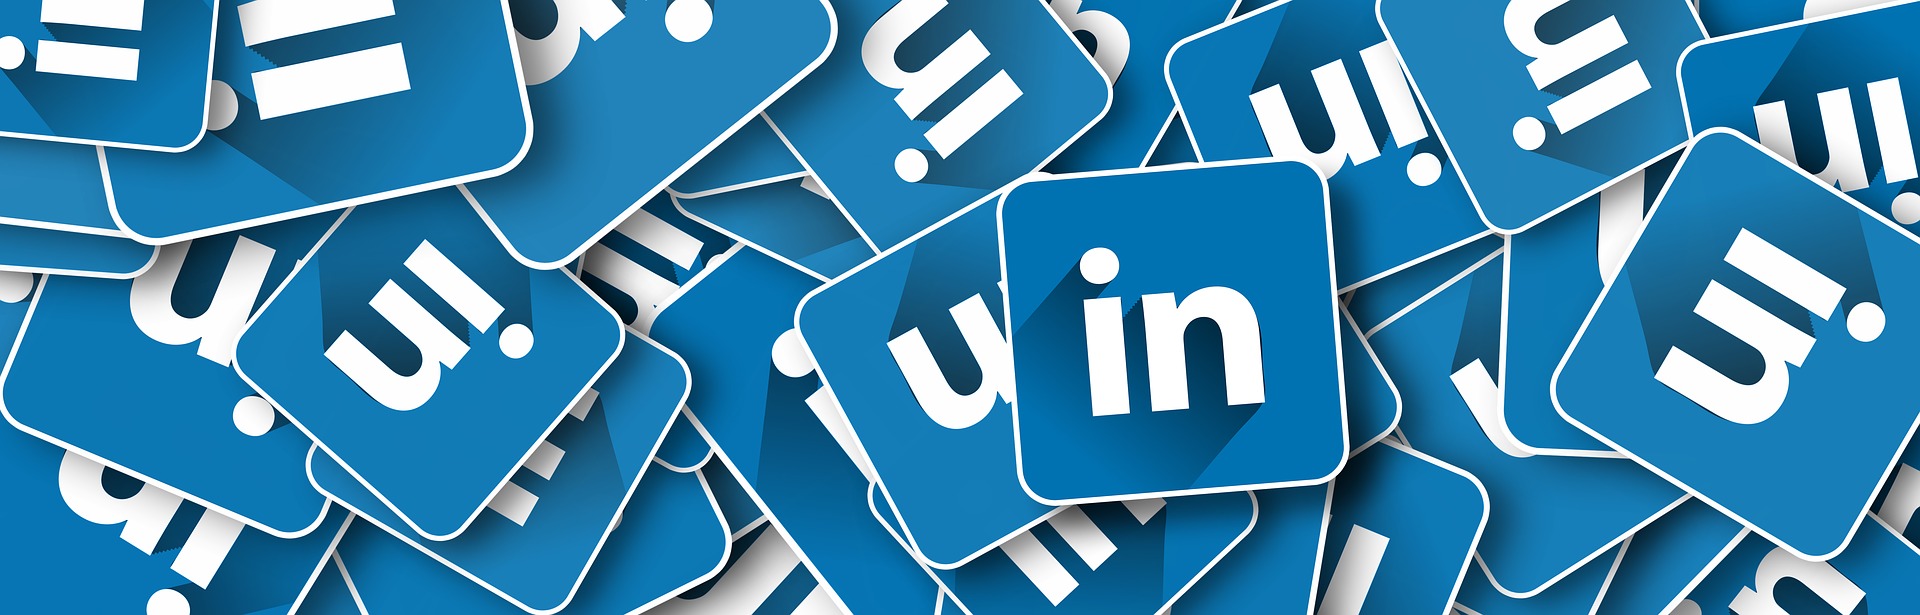 LinkedIn Social Media Marketing